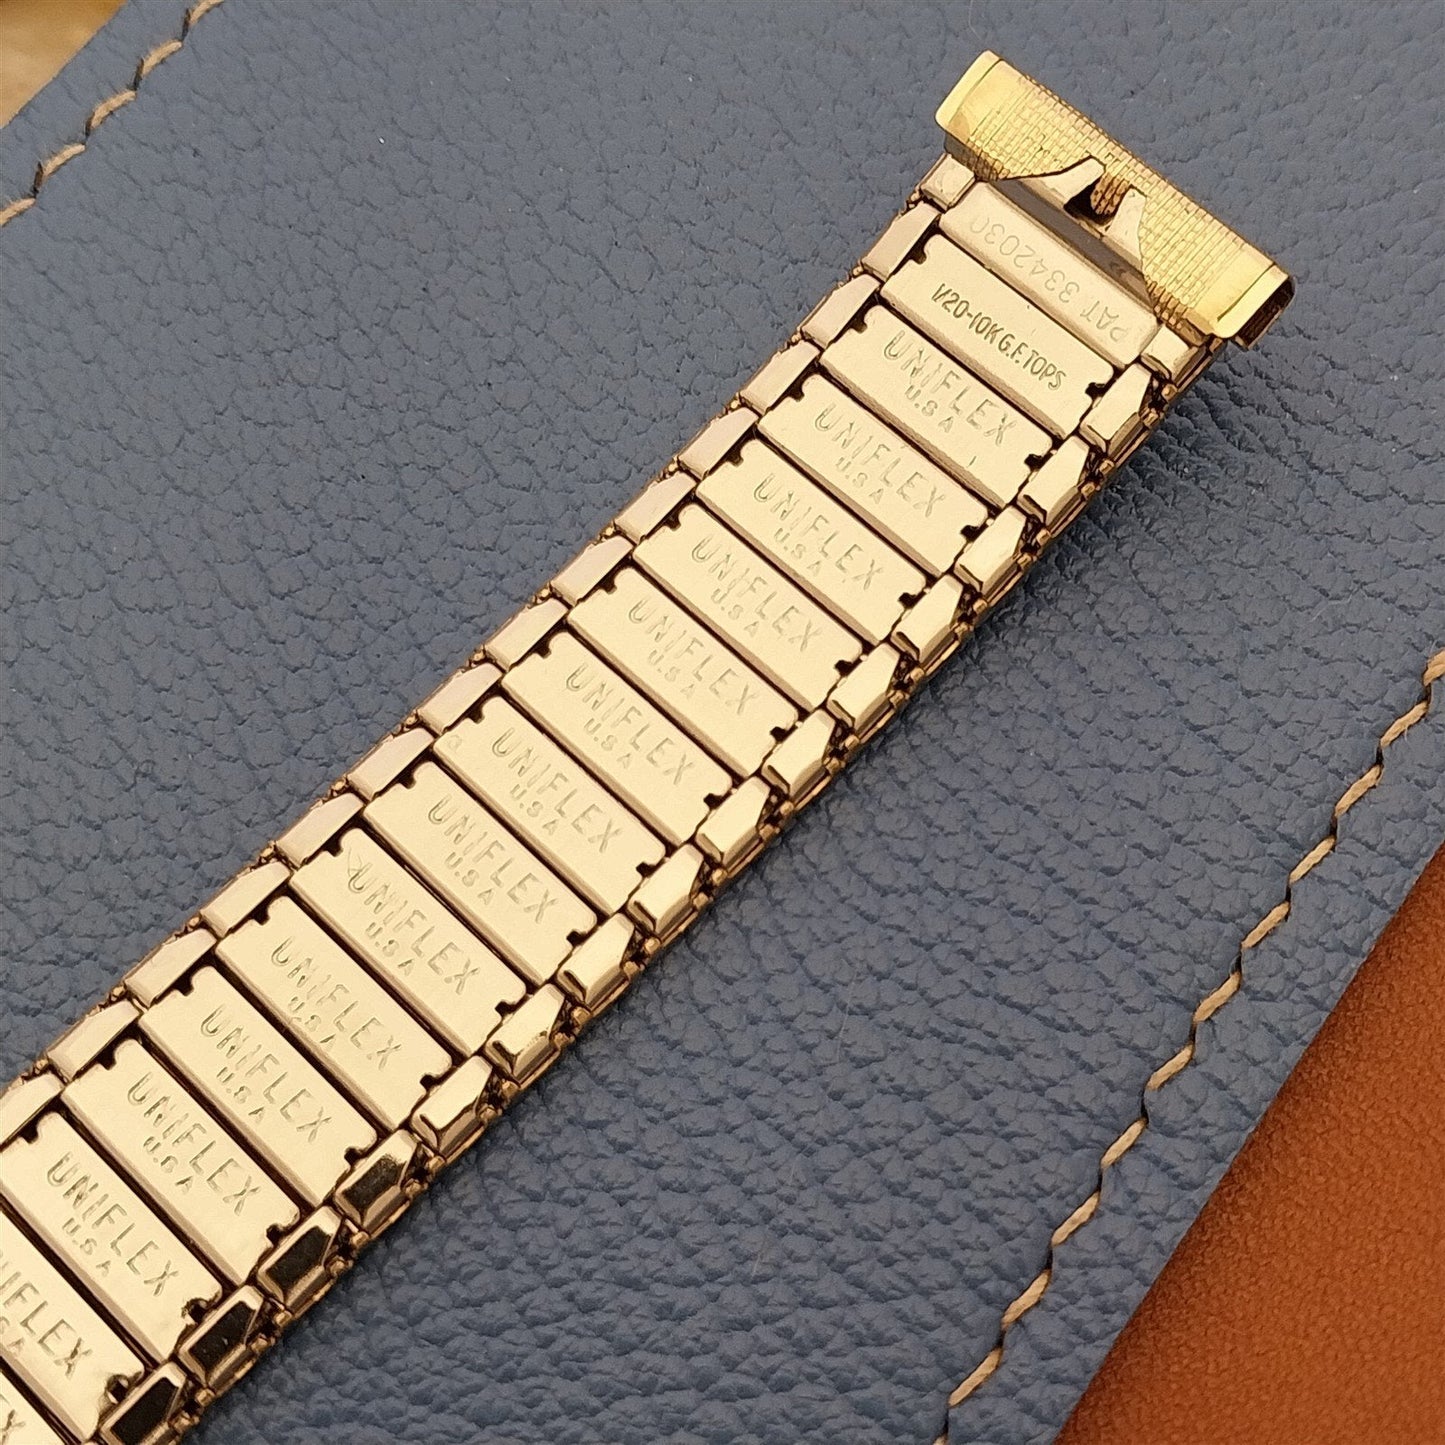 17.2mm 10k Gold-Filled Uniflex Slim Expansion 1960s Unused Vintage Watch Band